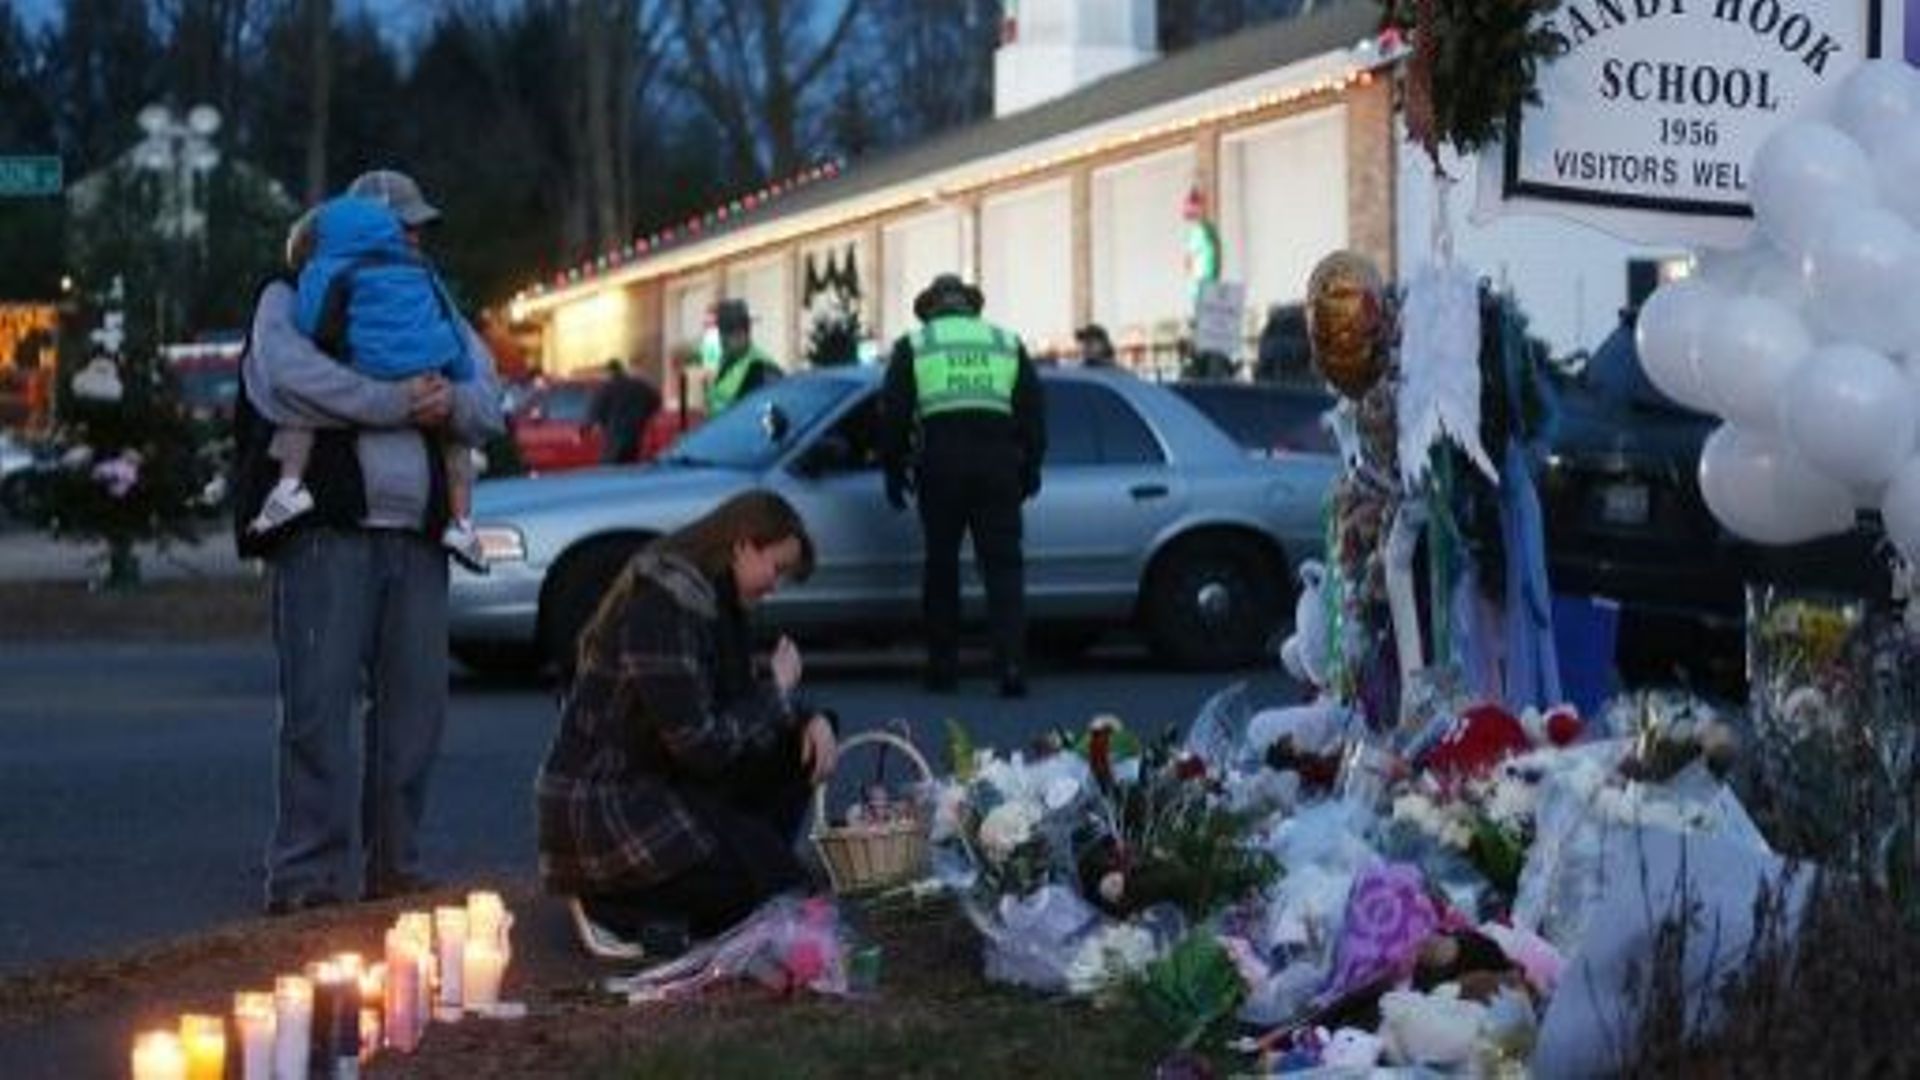 Des personnes rendent hommage aux victimes de la tuerie de l'école primaire Sandy Cook de Newtown dans le Connecticut, le 15 décembre 2012